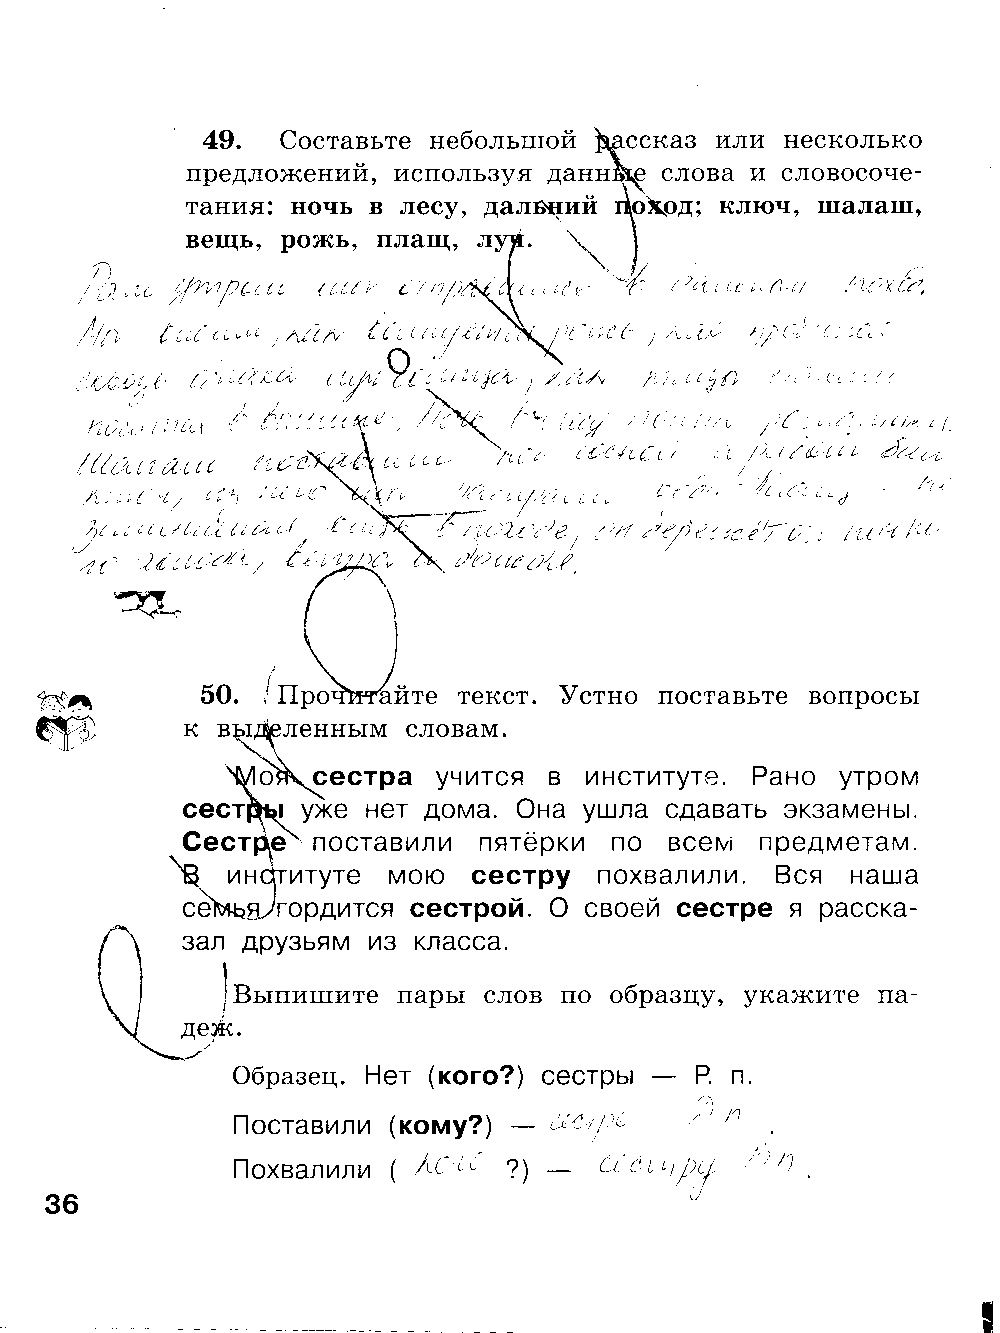 ГДЗ Русский язык 3 класс - стр. 36